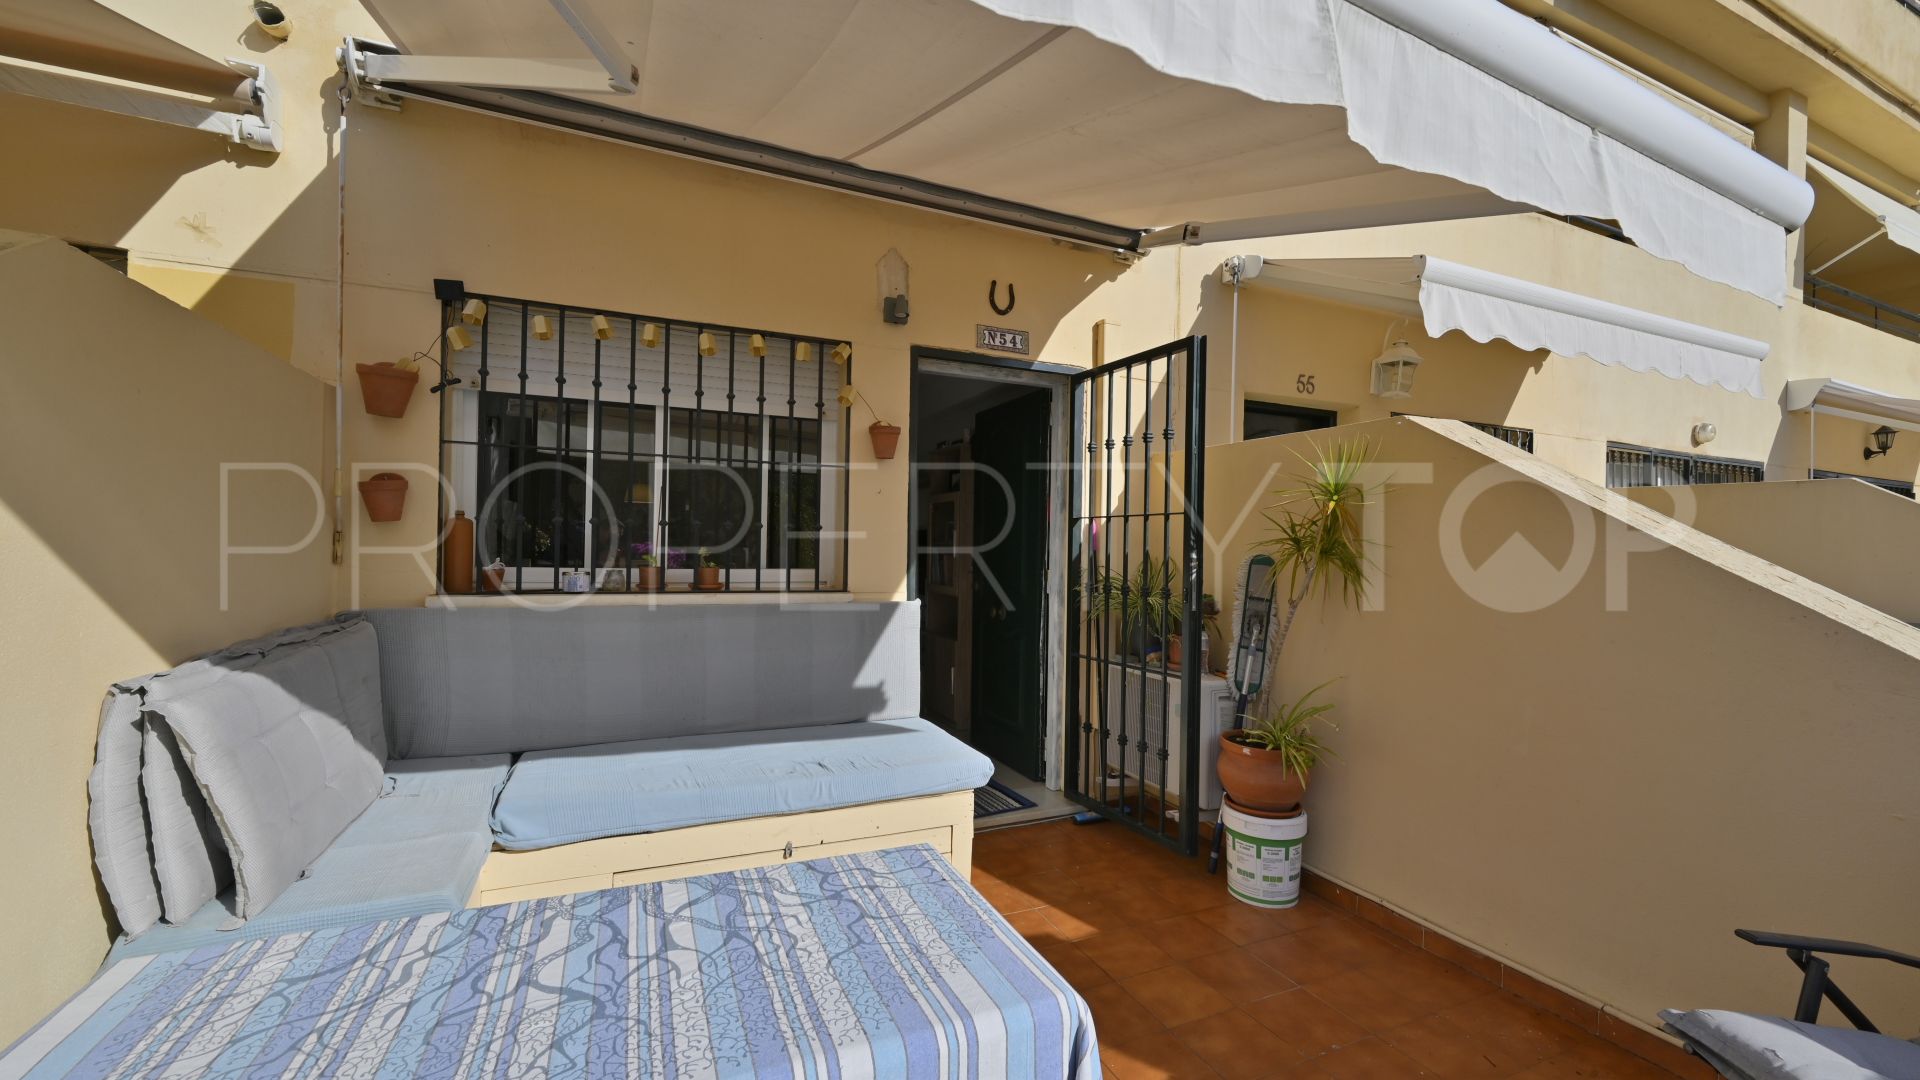 For sale ground floor duplex in Calahonda with 2 bedrooms